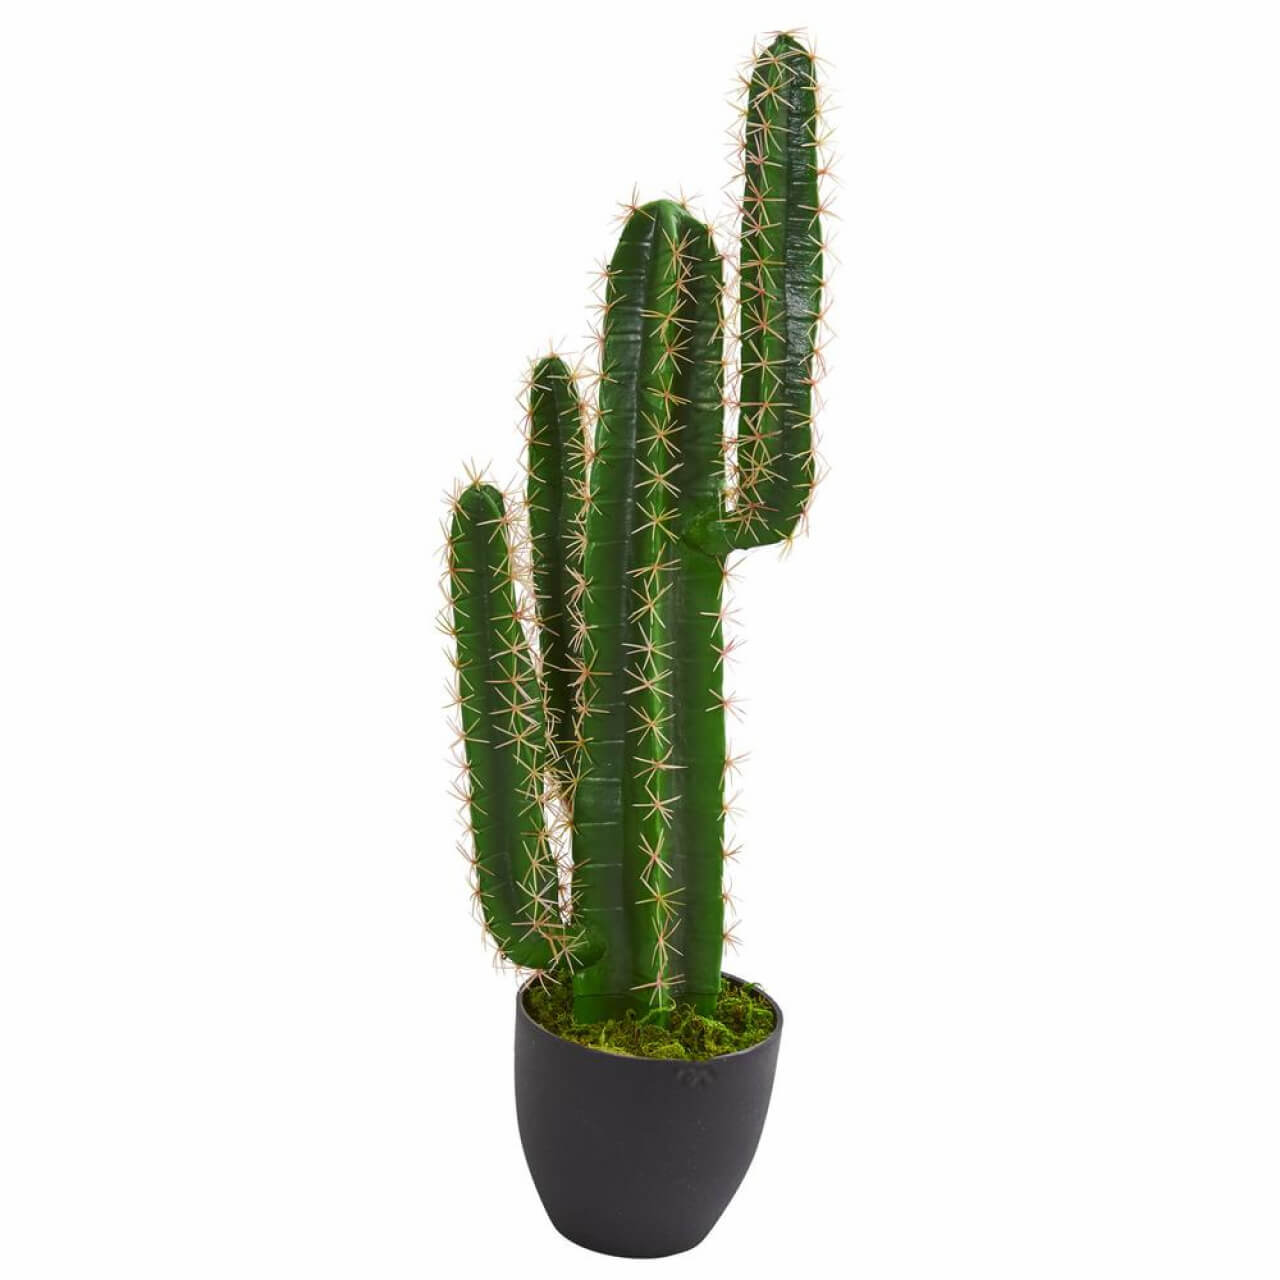 Beltéri - Kaktusz (cactus)